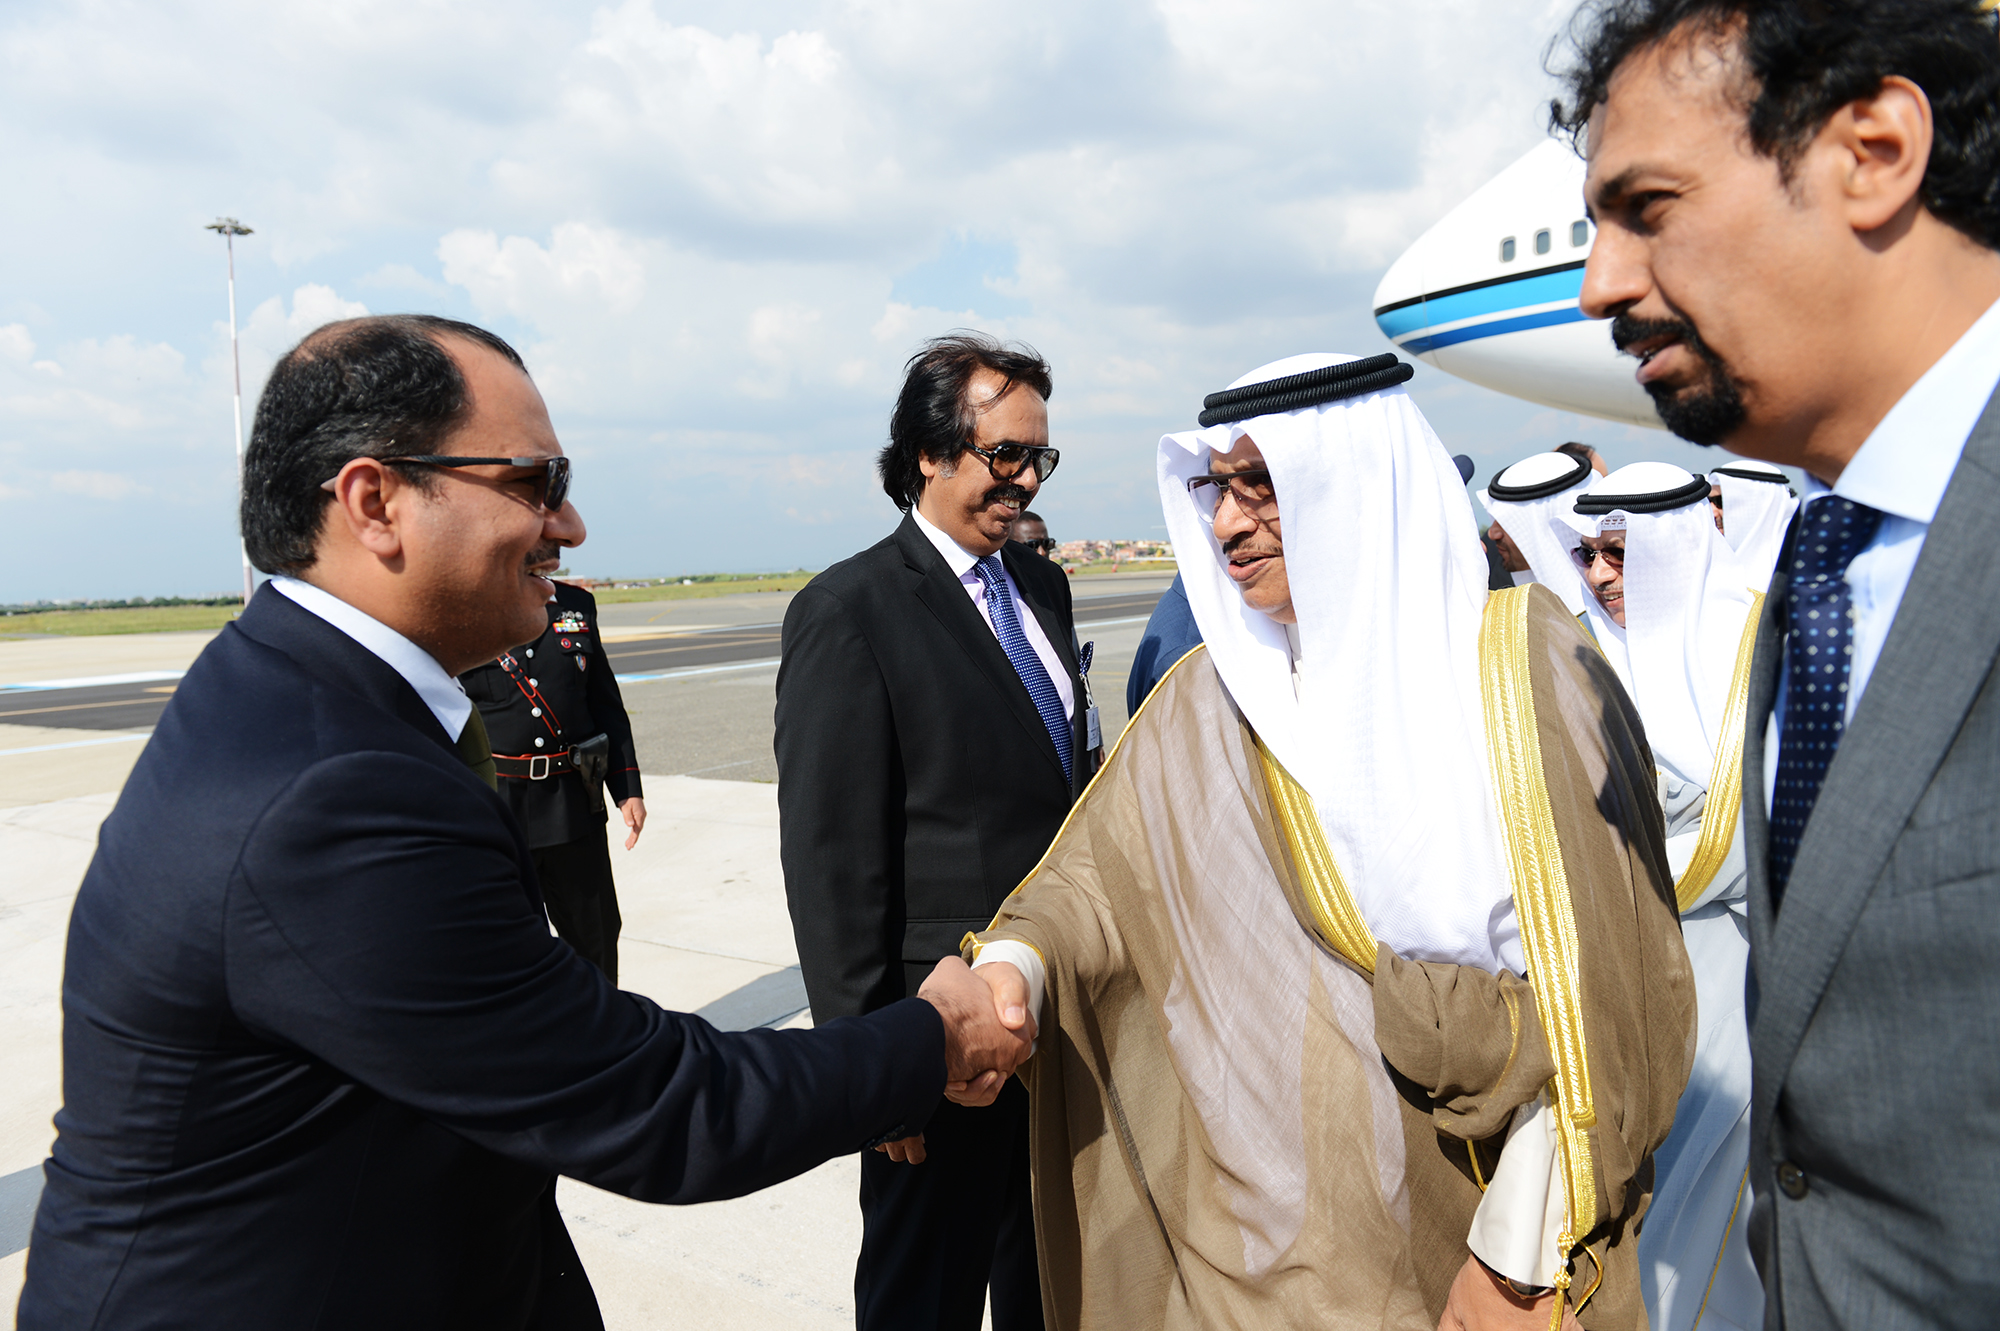 His Highness the Prime Minister Sheikh Jaber Al-Mubarak Al-Hamad Al-Sabah arrived in Italy